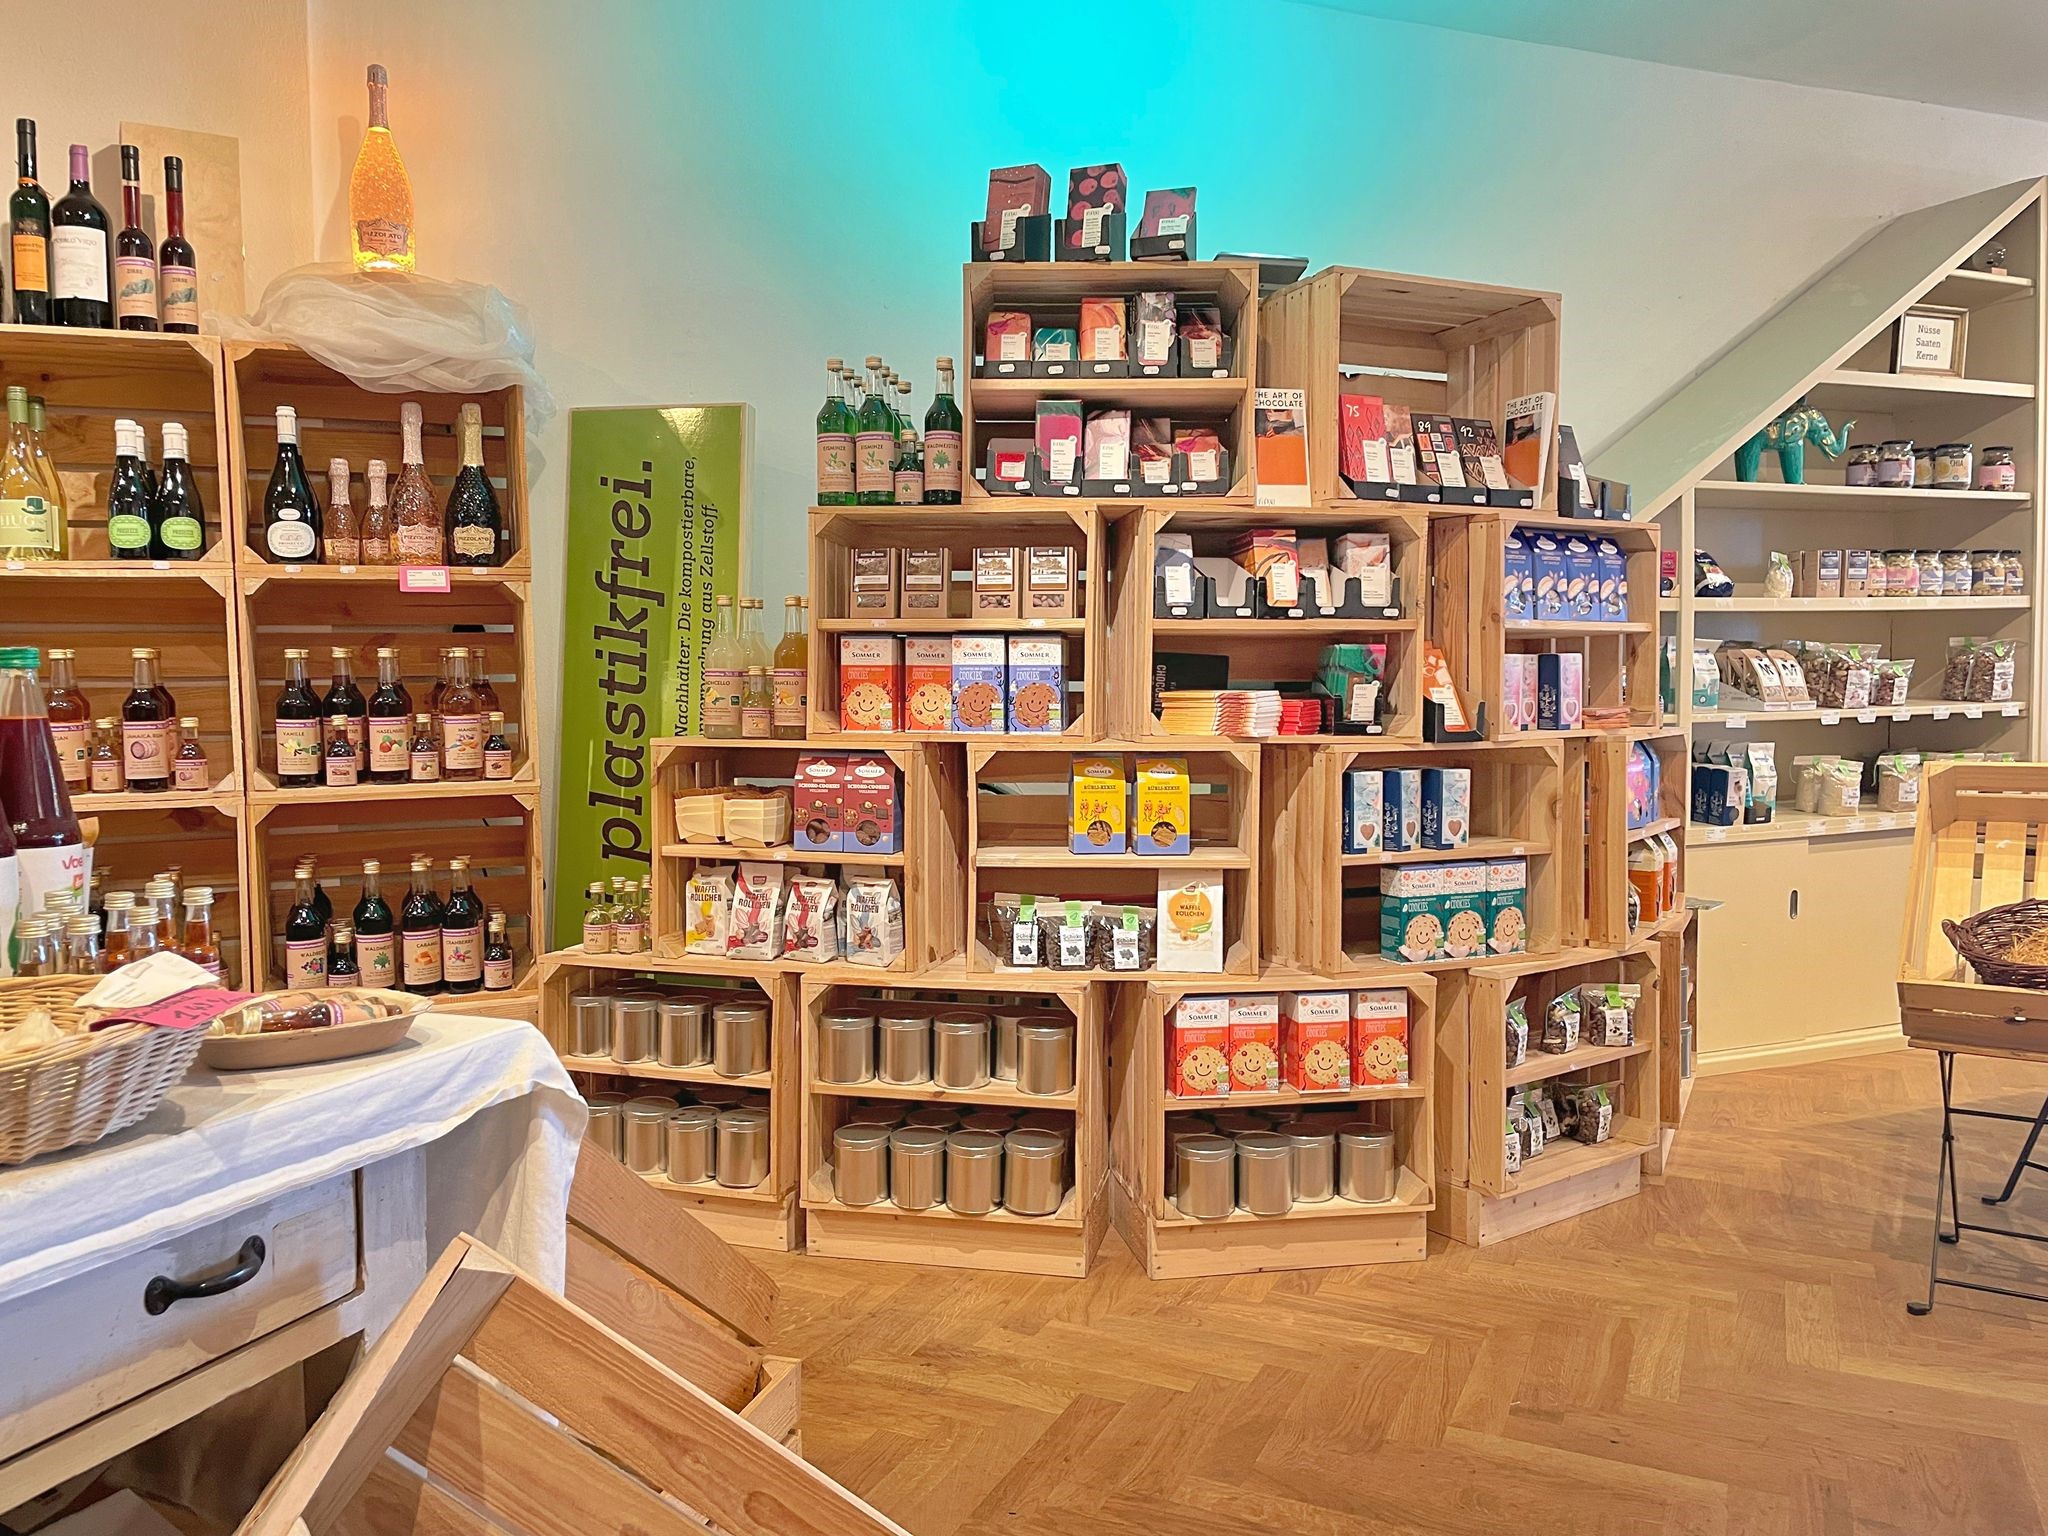 Blick in den Verkaufsraum von Grünkunft, in dem statt klassische Regale Weinkisten aus Holz zur Warenpräsentation genutzt werden. 